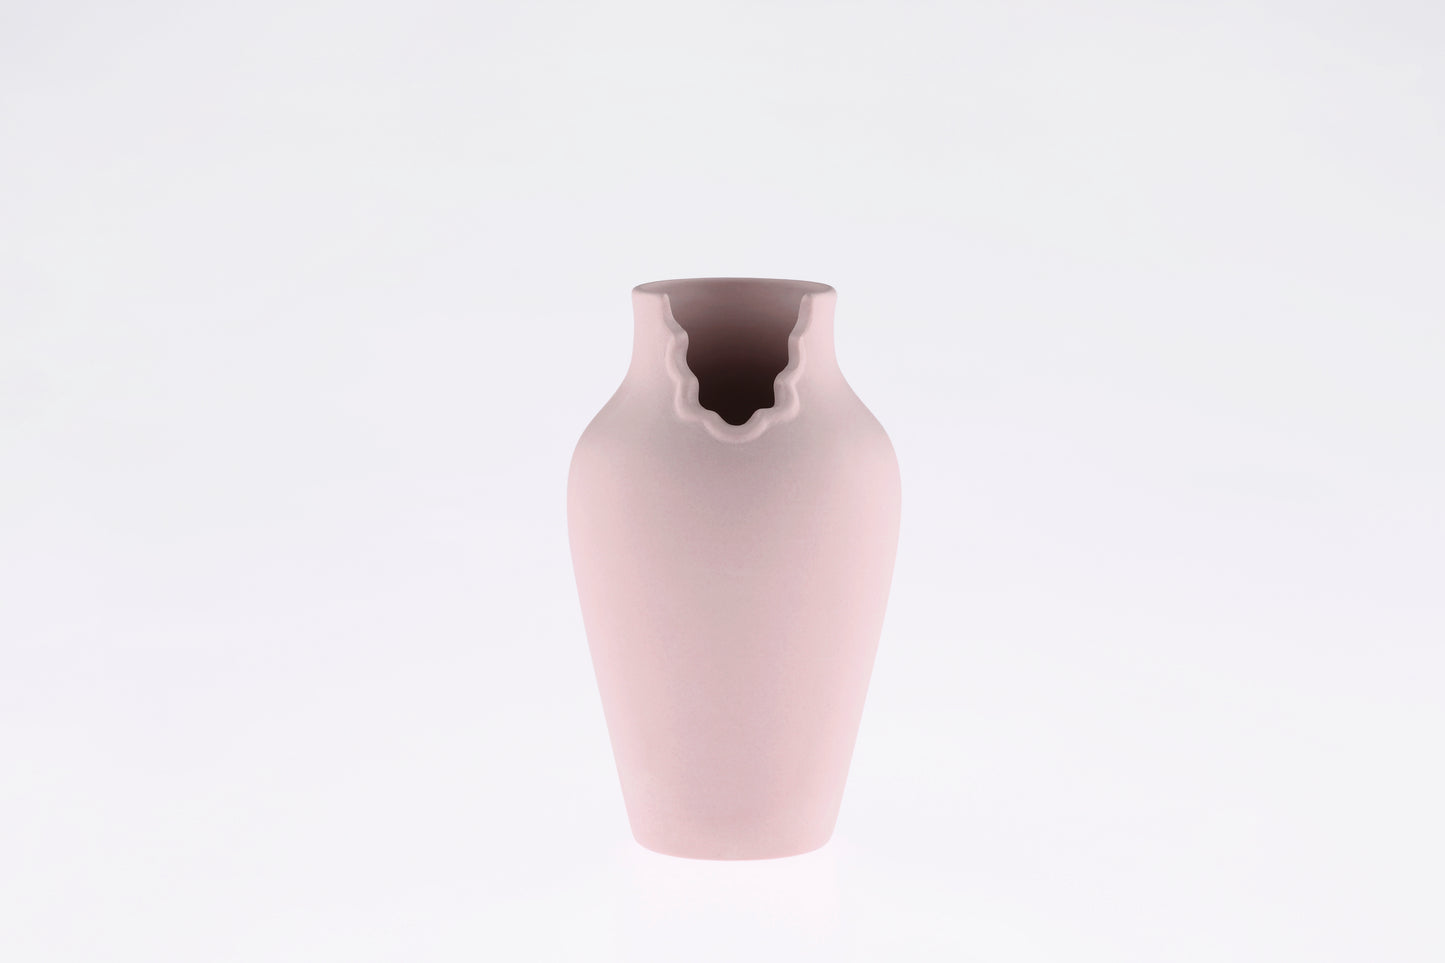 Dress-up Vase by Sato Oki